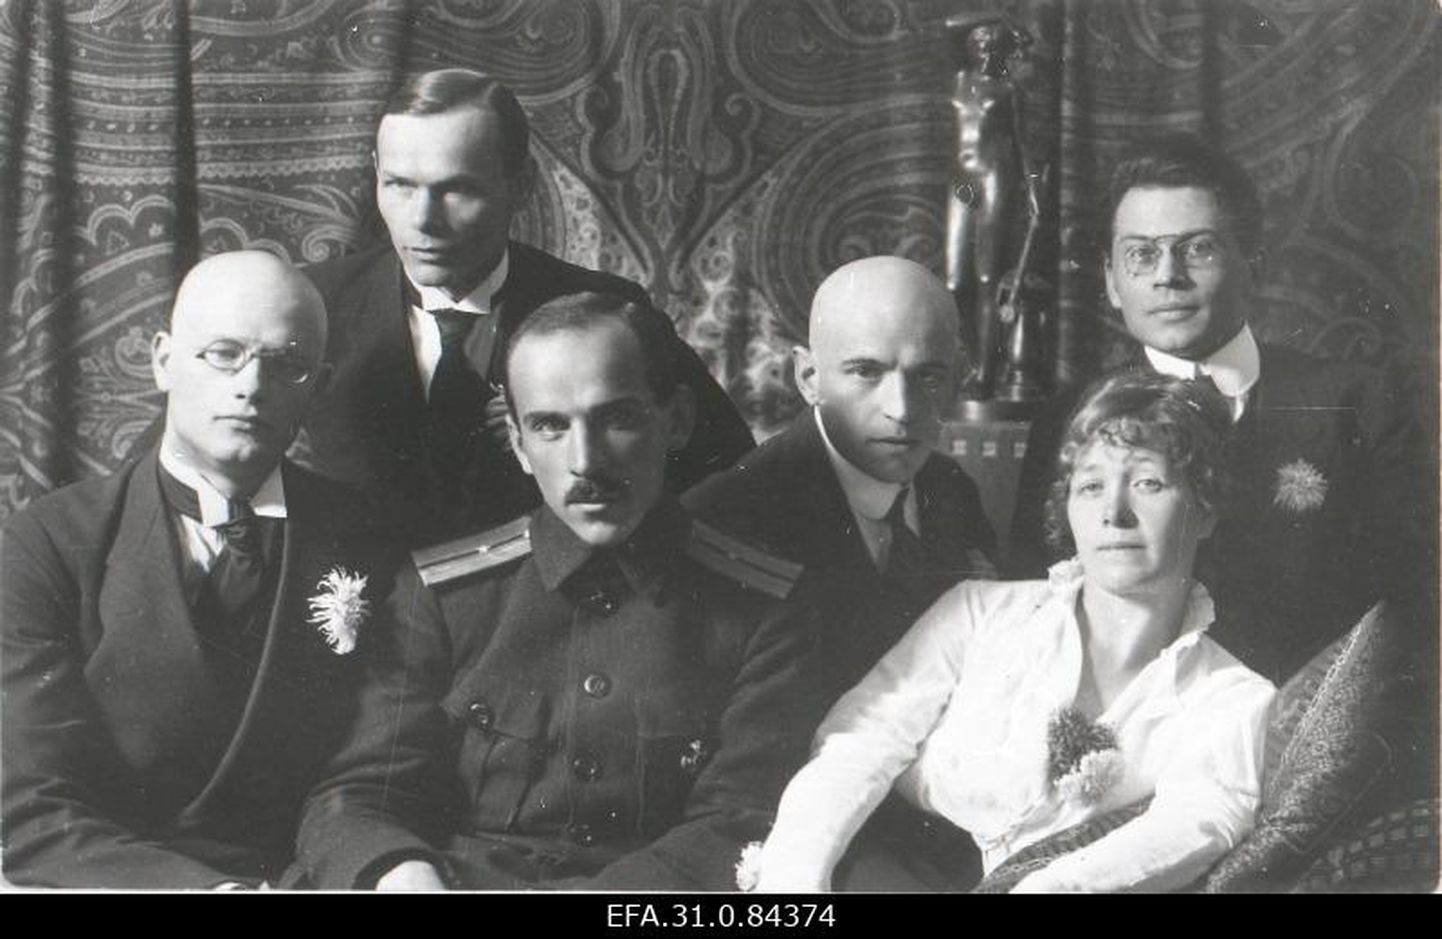 Kirjandusliku rühmituse Siuru liikmed: vasakult A. Gailit, H. Visnapuu, J. Semper, A. Adson, M. Under, Fr. Tuglas.